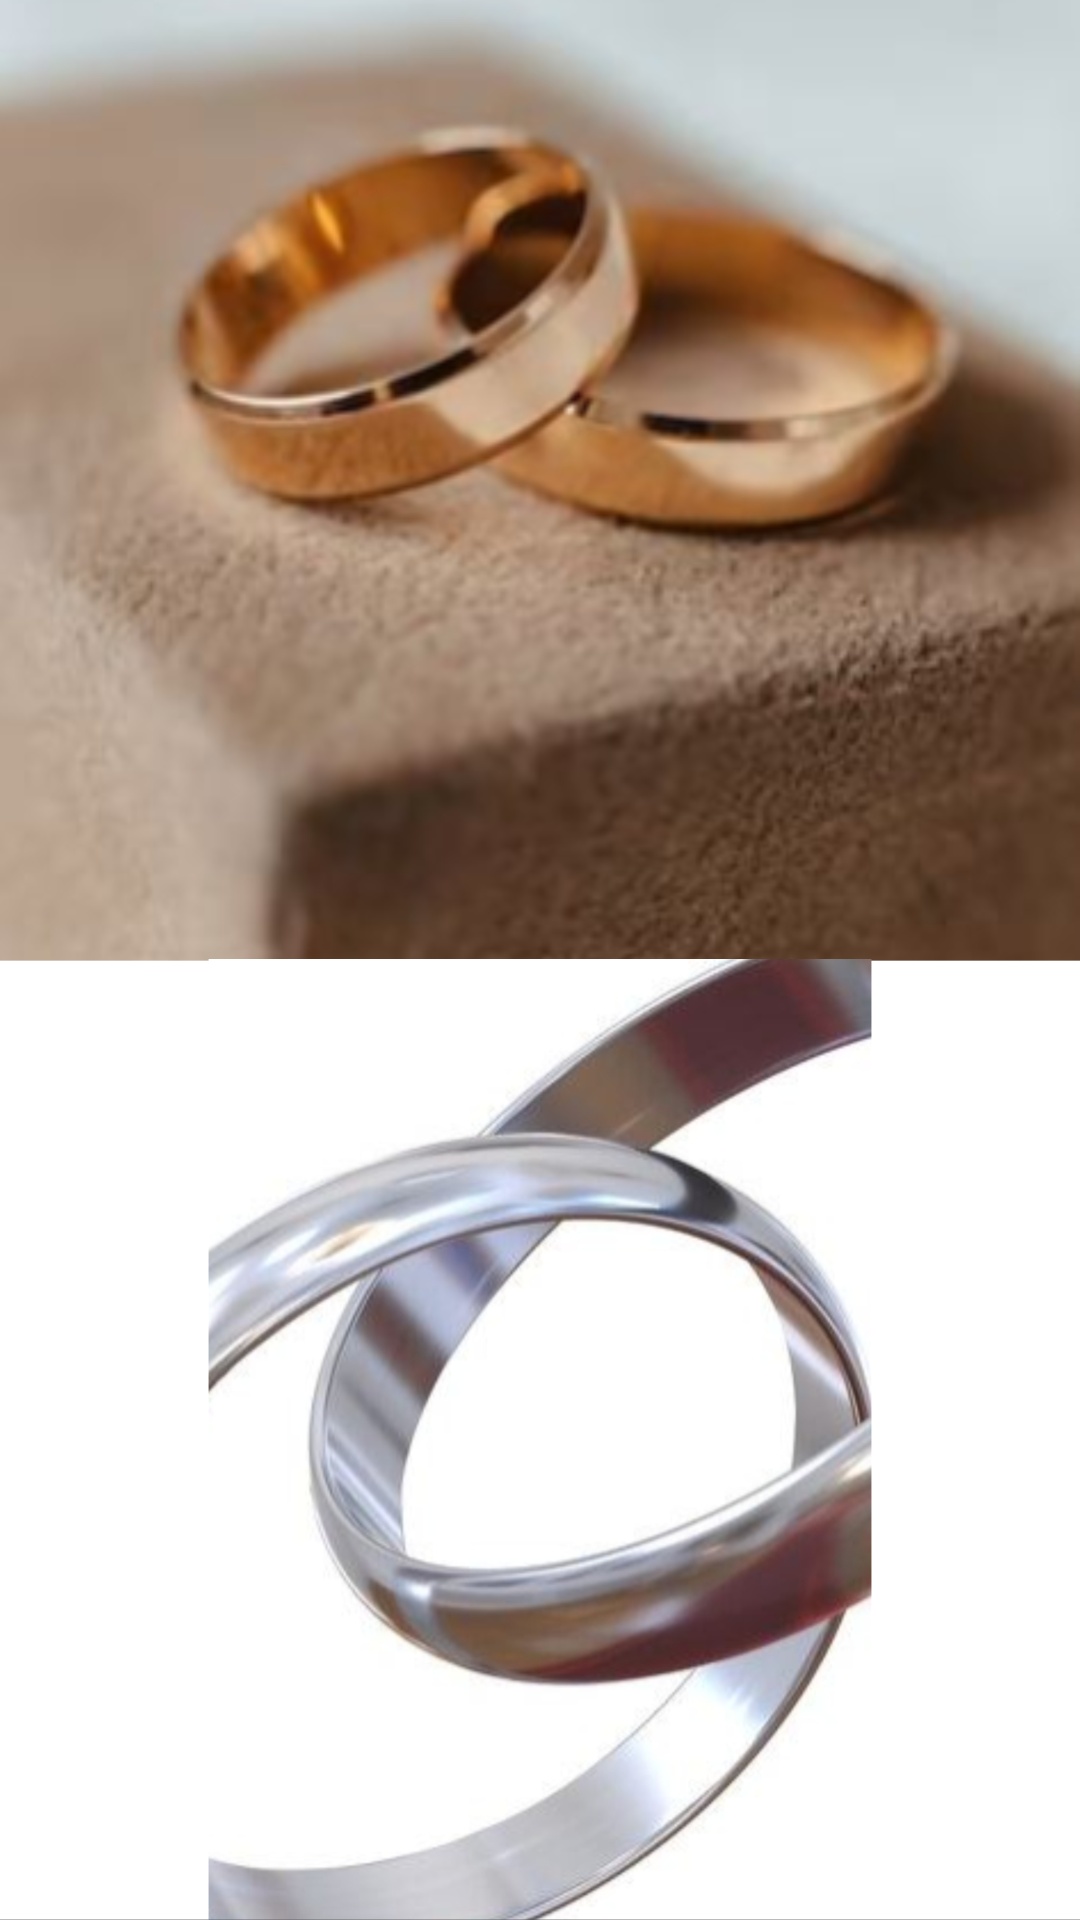 Benefits Of Copper Ring : तांबा का अंगूठी पहनने से क्या होता है? जानिए इसे  कब और किसे नहीं पहनना चाहिए? | Benefits Of Copper Ring Tambe Ki Anguthi  Pahnane se Kya